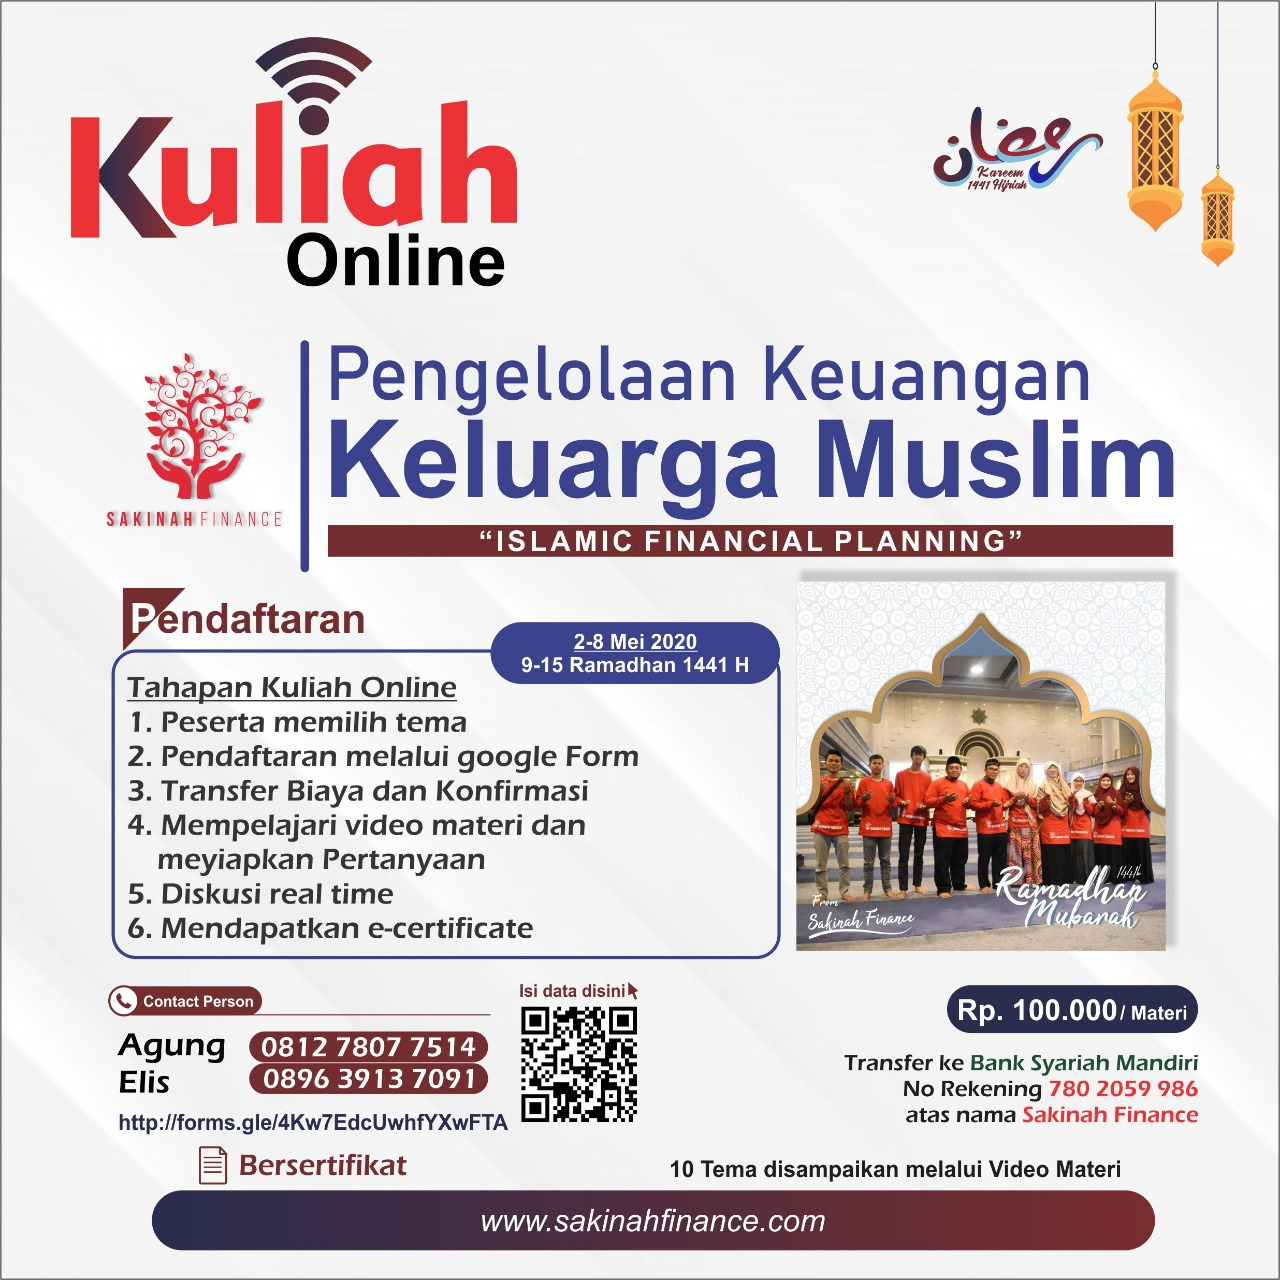 Telah Dibuka!!! Pendaftaran Kuliah Online “Pengelolaan Keuangan Keluarga Muslim” Bersama Sakinah Finance